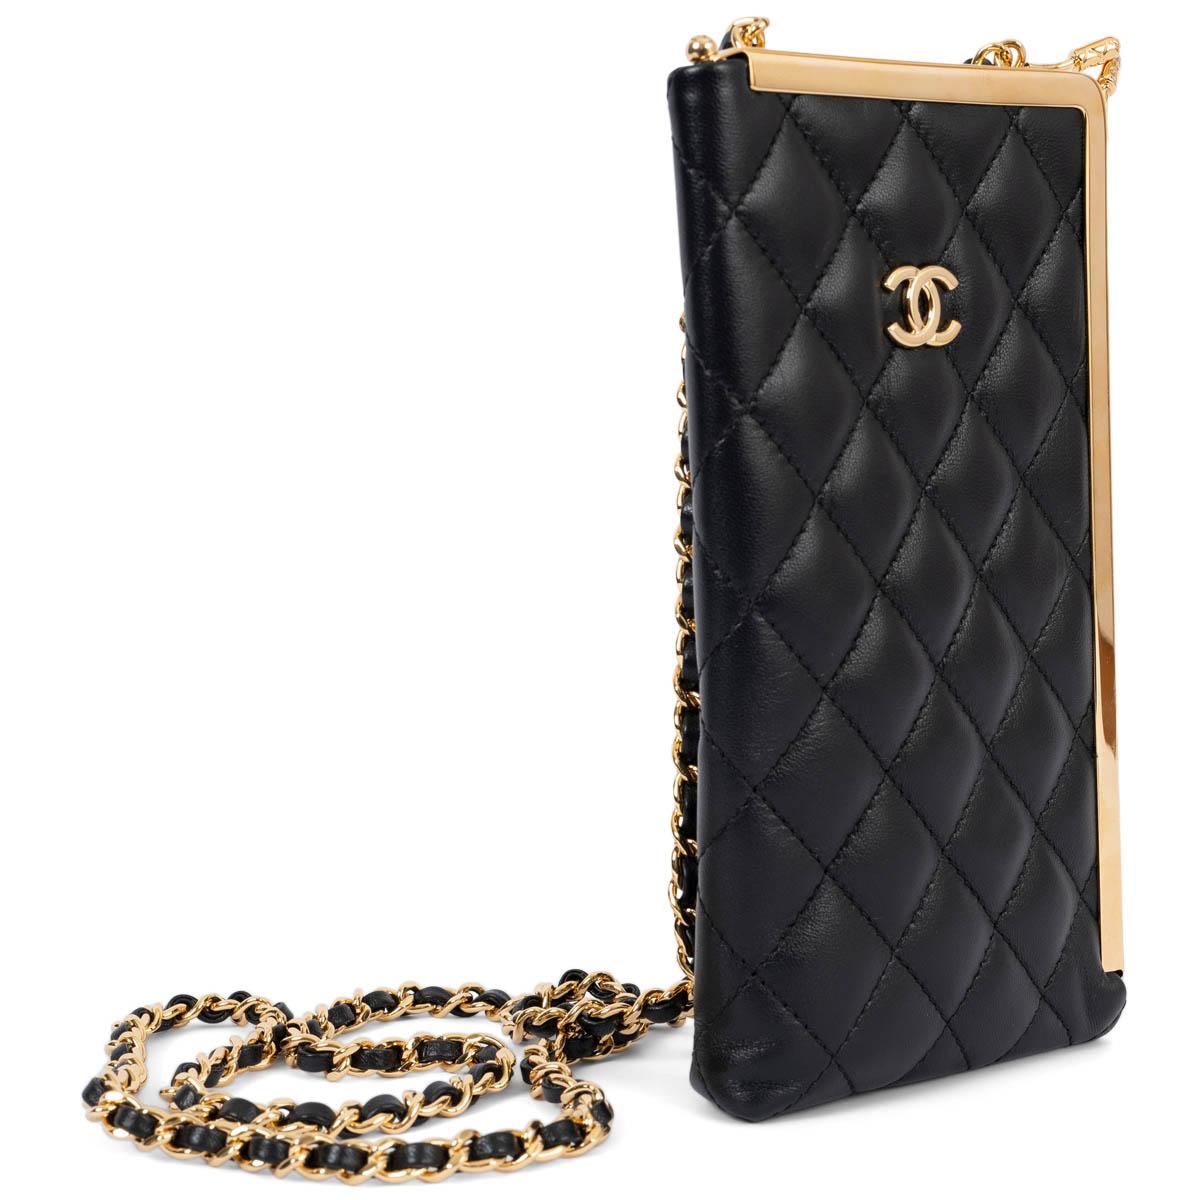 100% authentische Chanel Kisslock Frame Clutch an Kette aus schwarzem Lammleder mit goldfarbenen Metallbeschlägen. Gefüttert mit schwarzem Leder und einem Kreditkartenfach. Wurde ein- oder zweimal getragen und weist auf der Rückseite schwache